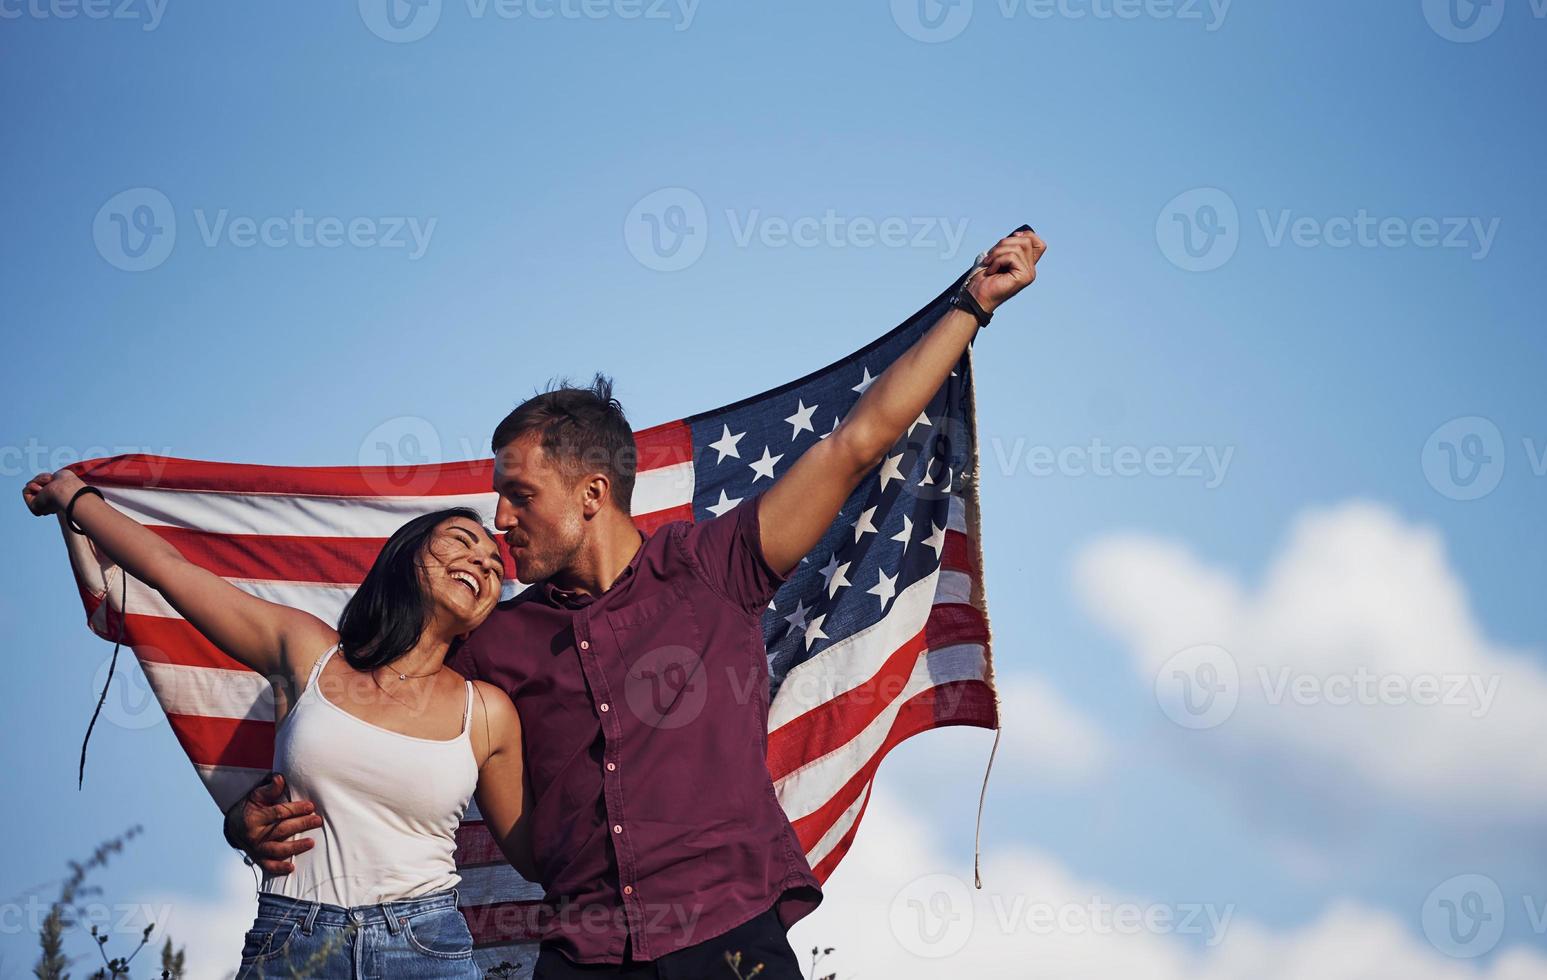 sente liberdade. lindo casal com bandeira americana se diverte ao ar livre no campo foto